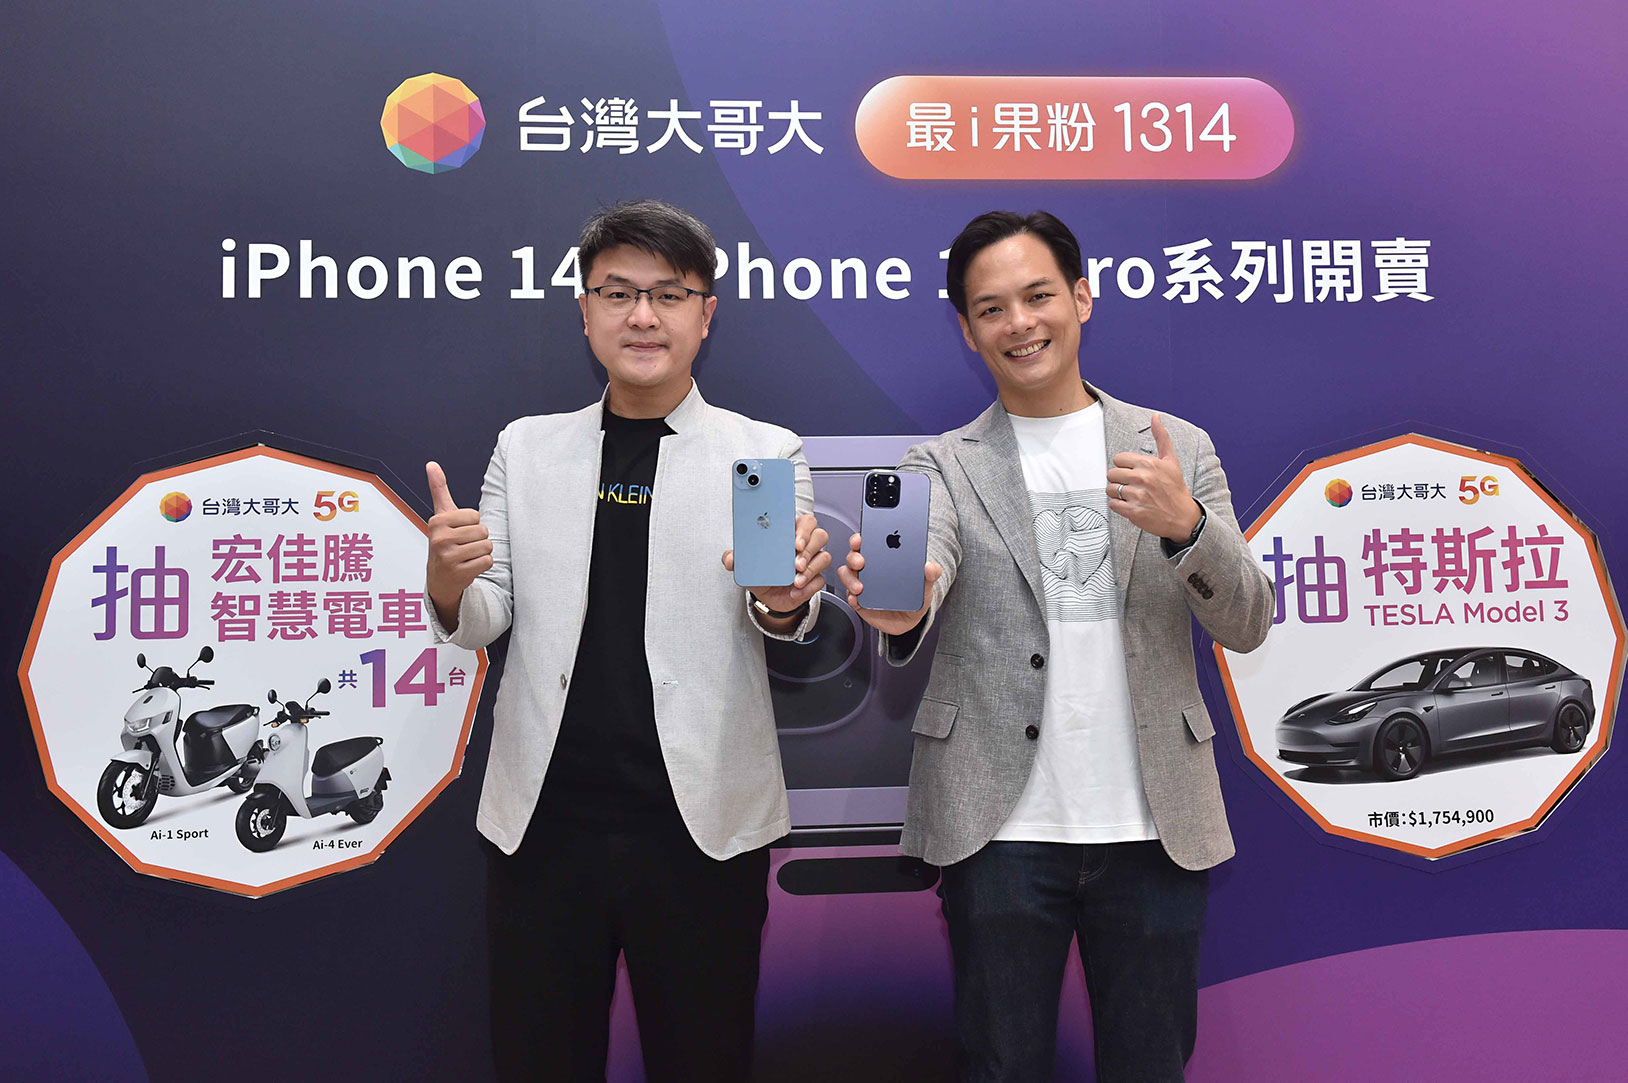 台灣大哥大總經理林之晨(右)、商務長林東閔(左)共同宣布台灣大式開賣 iPhone 14 系列新機。